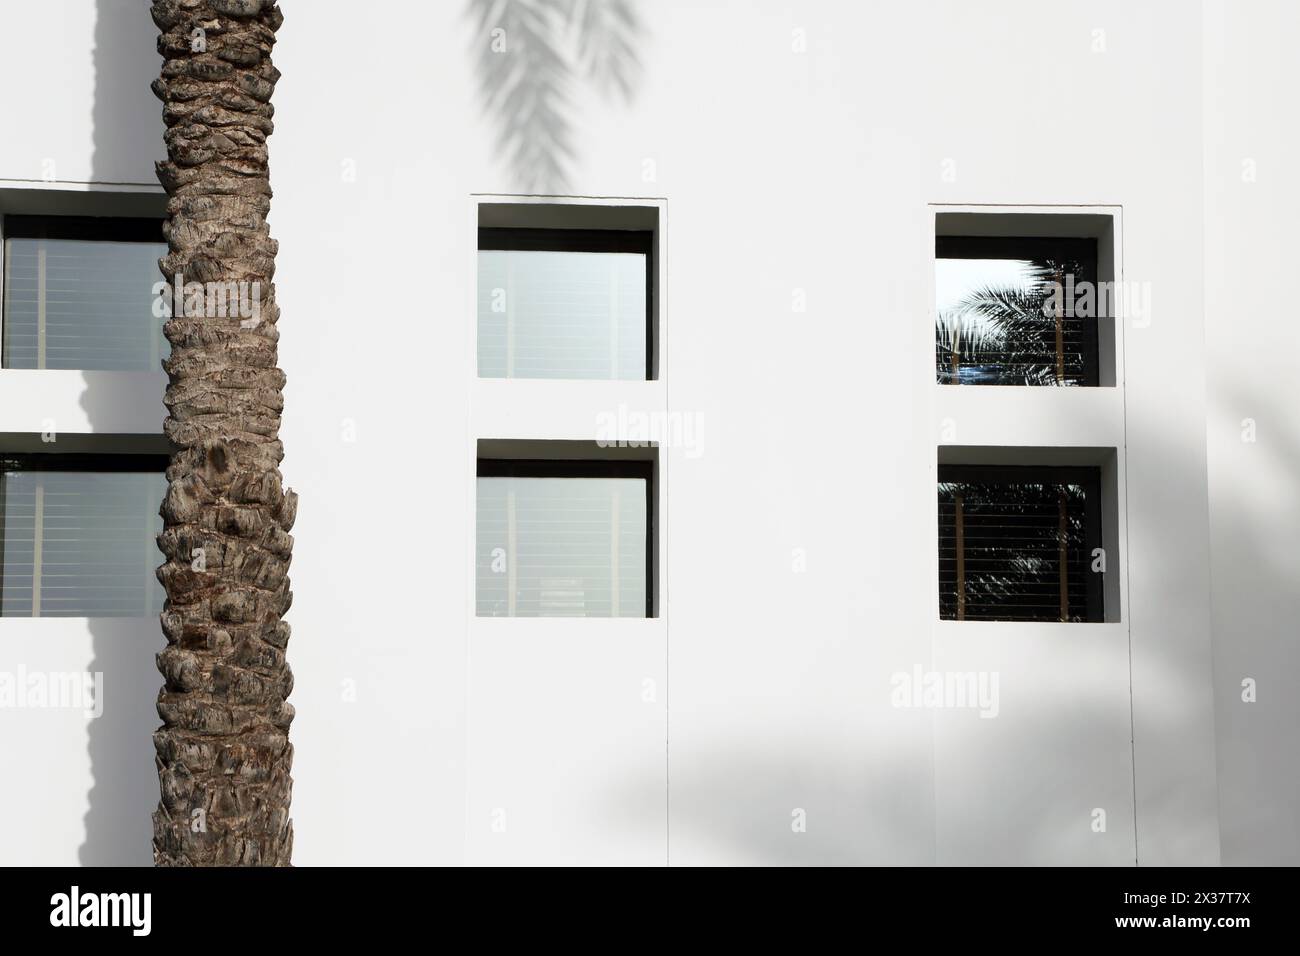 Datum Palmenstamm und Palmenschatten, die an weißen Wänden durch Fenster verziert sind. Das Chedi Hotel Muscat Oman Stockfoto